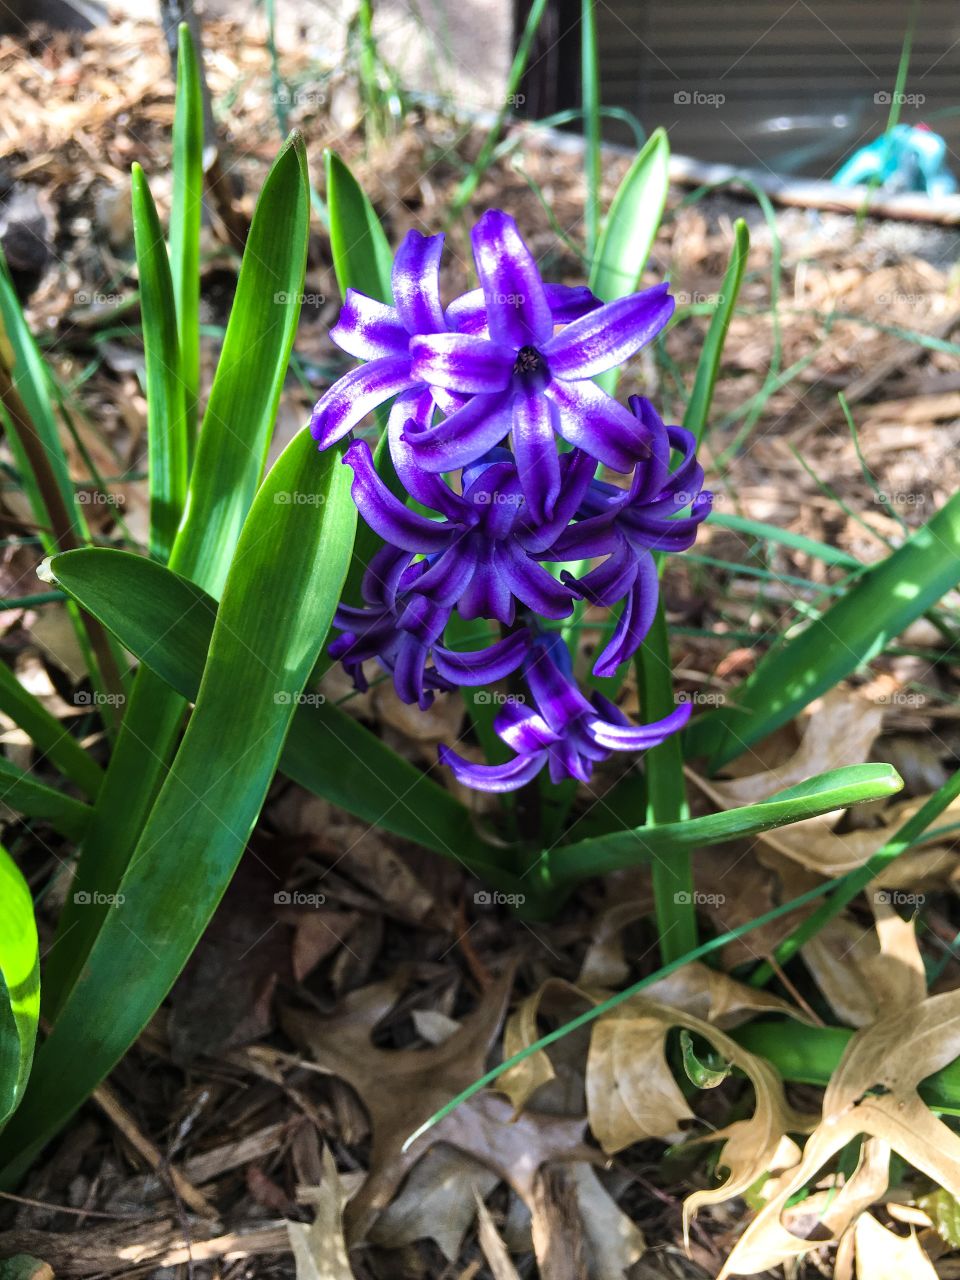 Hyacinth in bloom